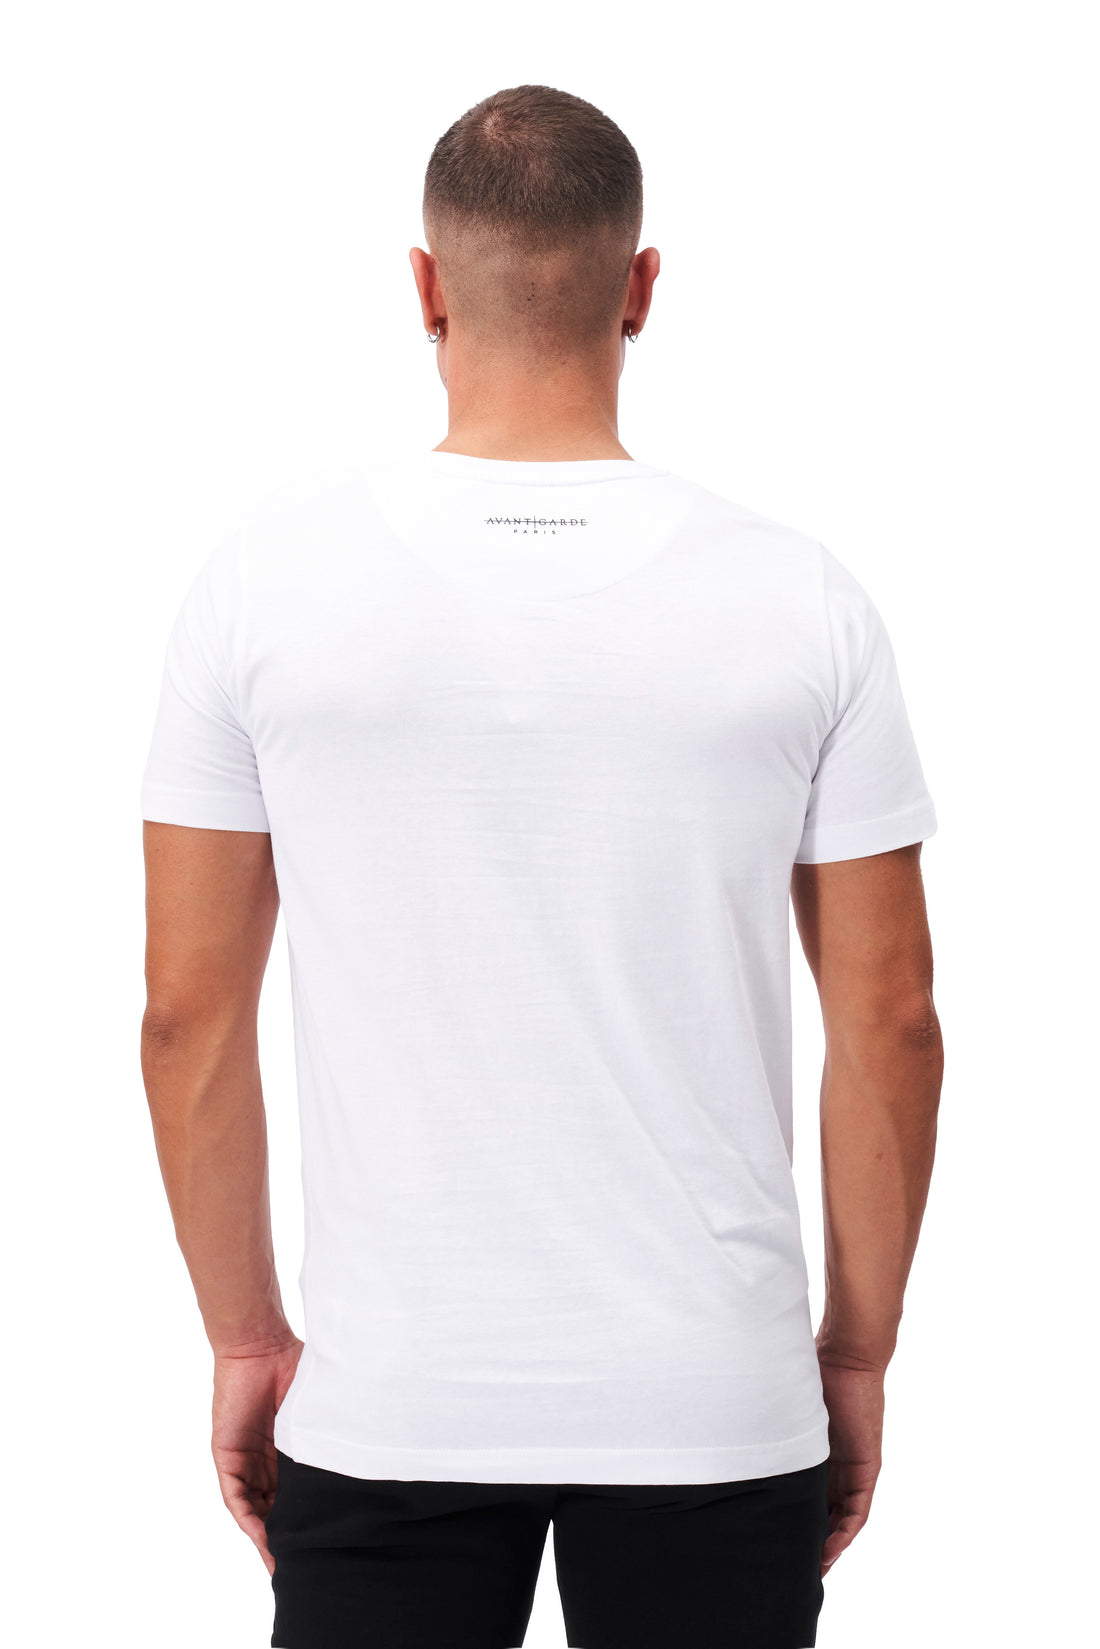 Criptic T-Shirt in White